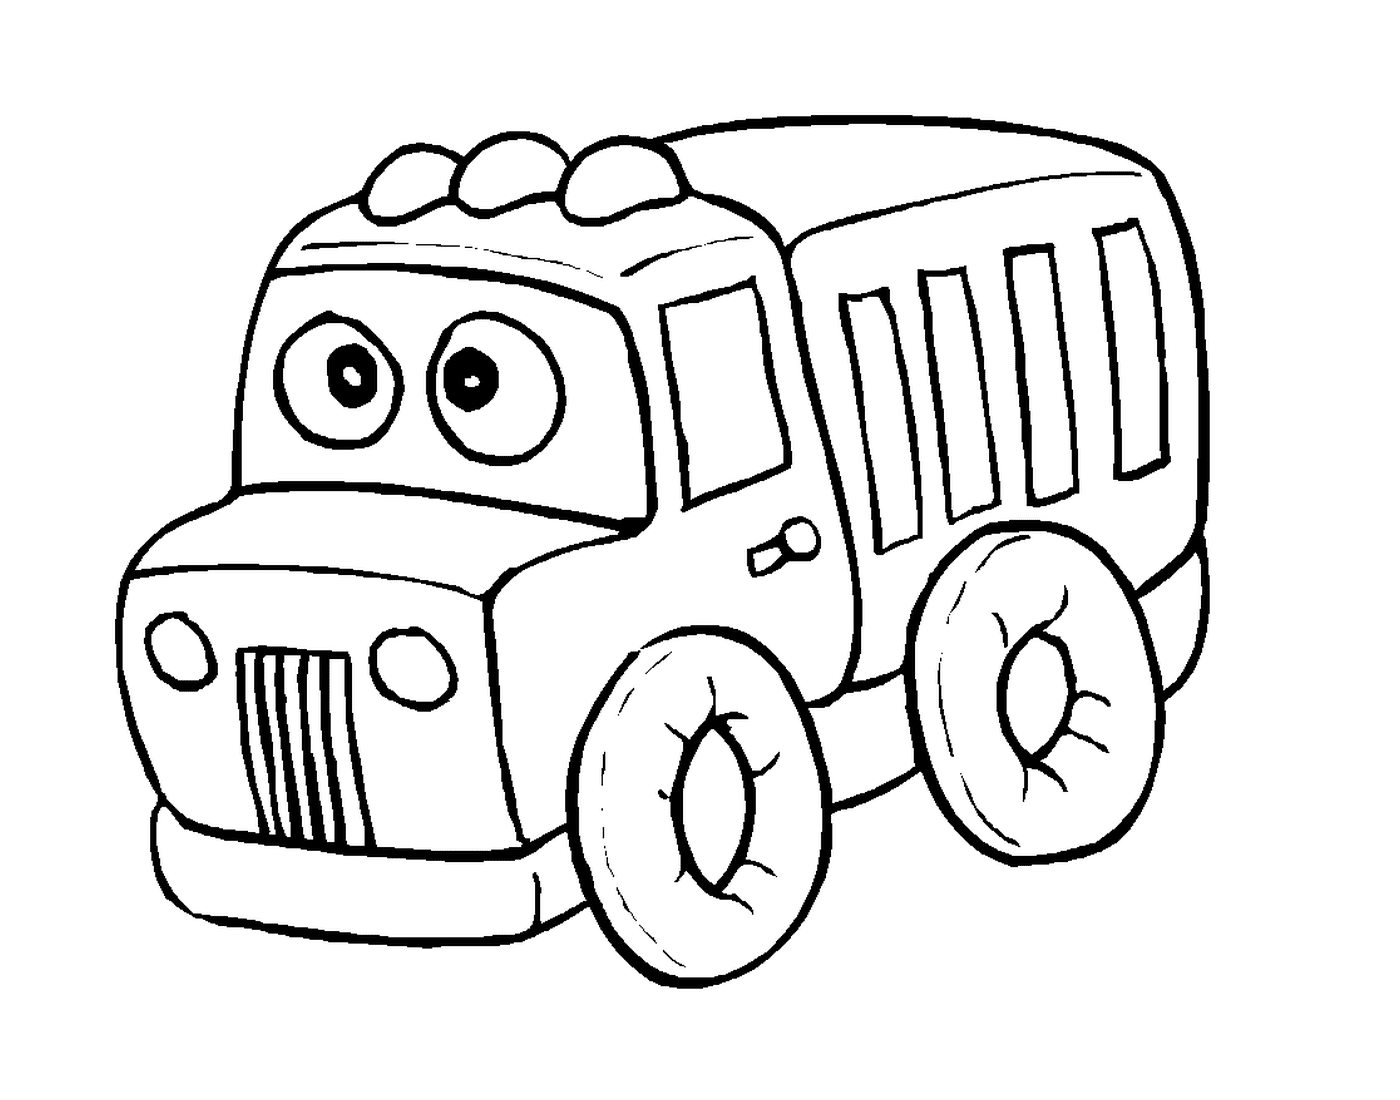   Camion de dessin animé 